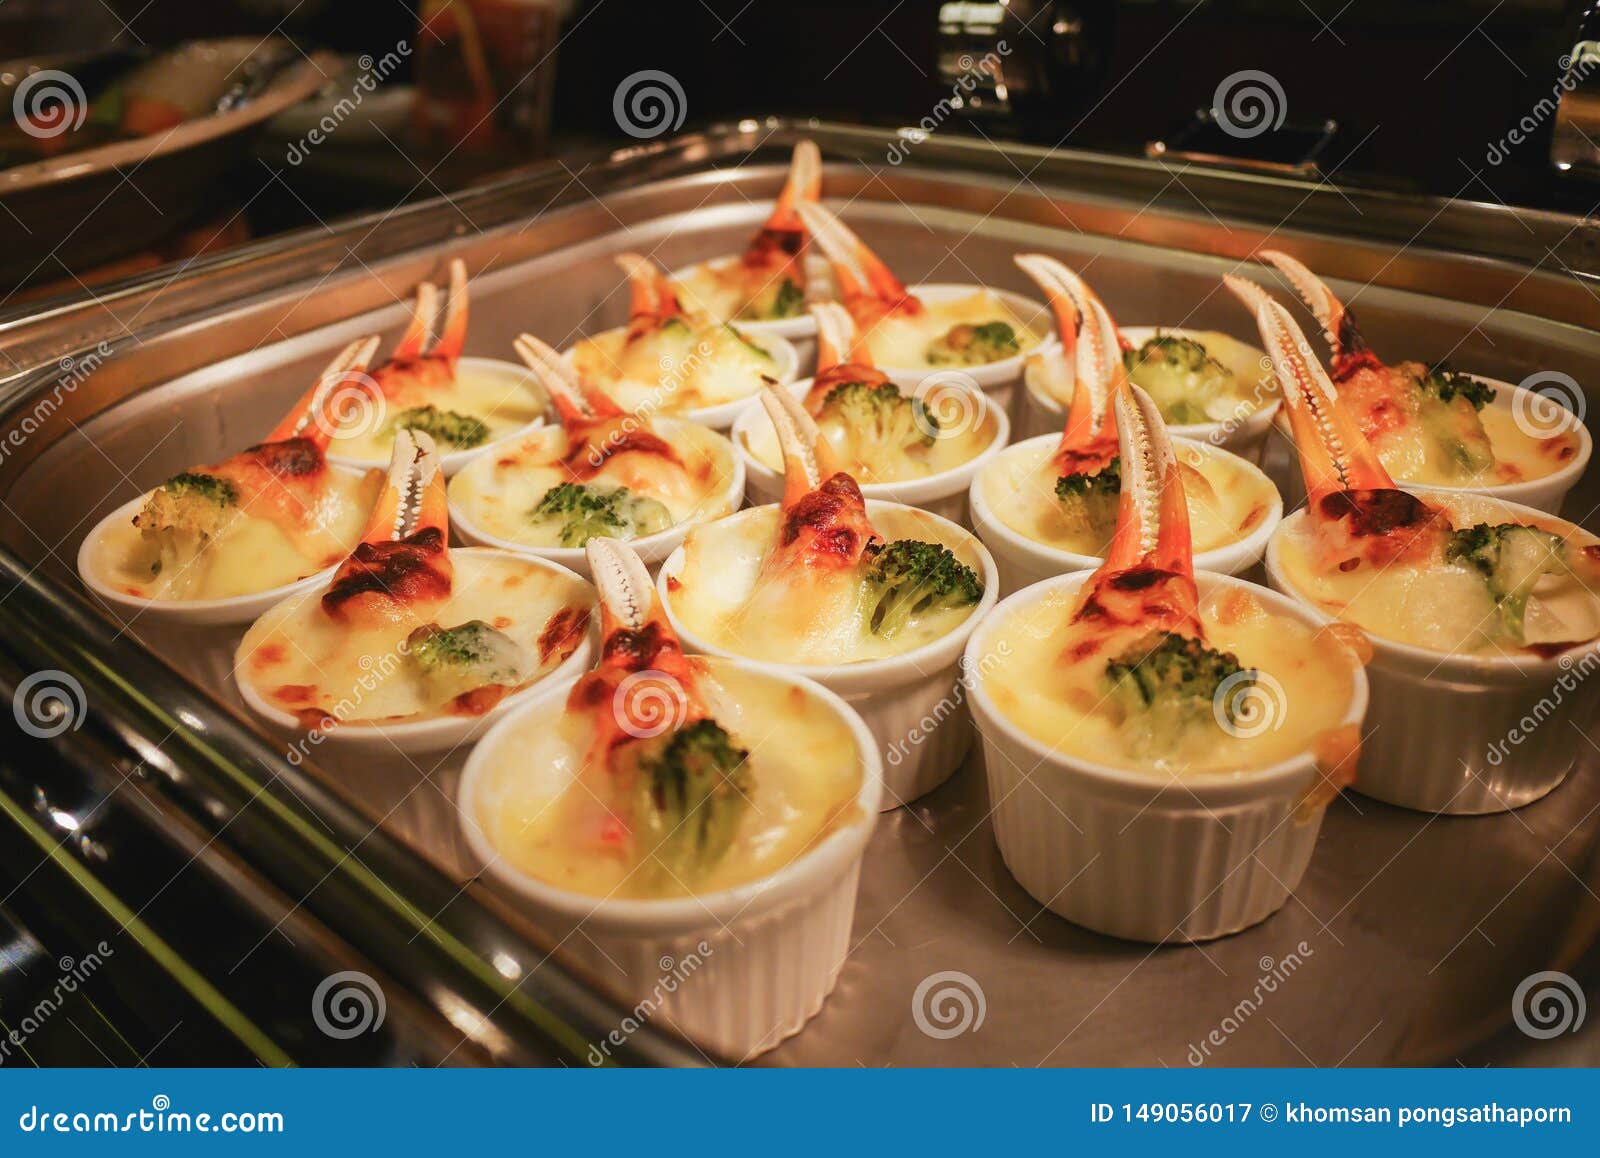 De krabben en de broccoli Gebakken kaas zijn in grote aantallen bereid met het aantal gasten van het hotel omhoog houden om ontbi. Krab en broccoli met kaas Populair als hoogste menu van het hotel voor ontbijt wordt gebakken dat